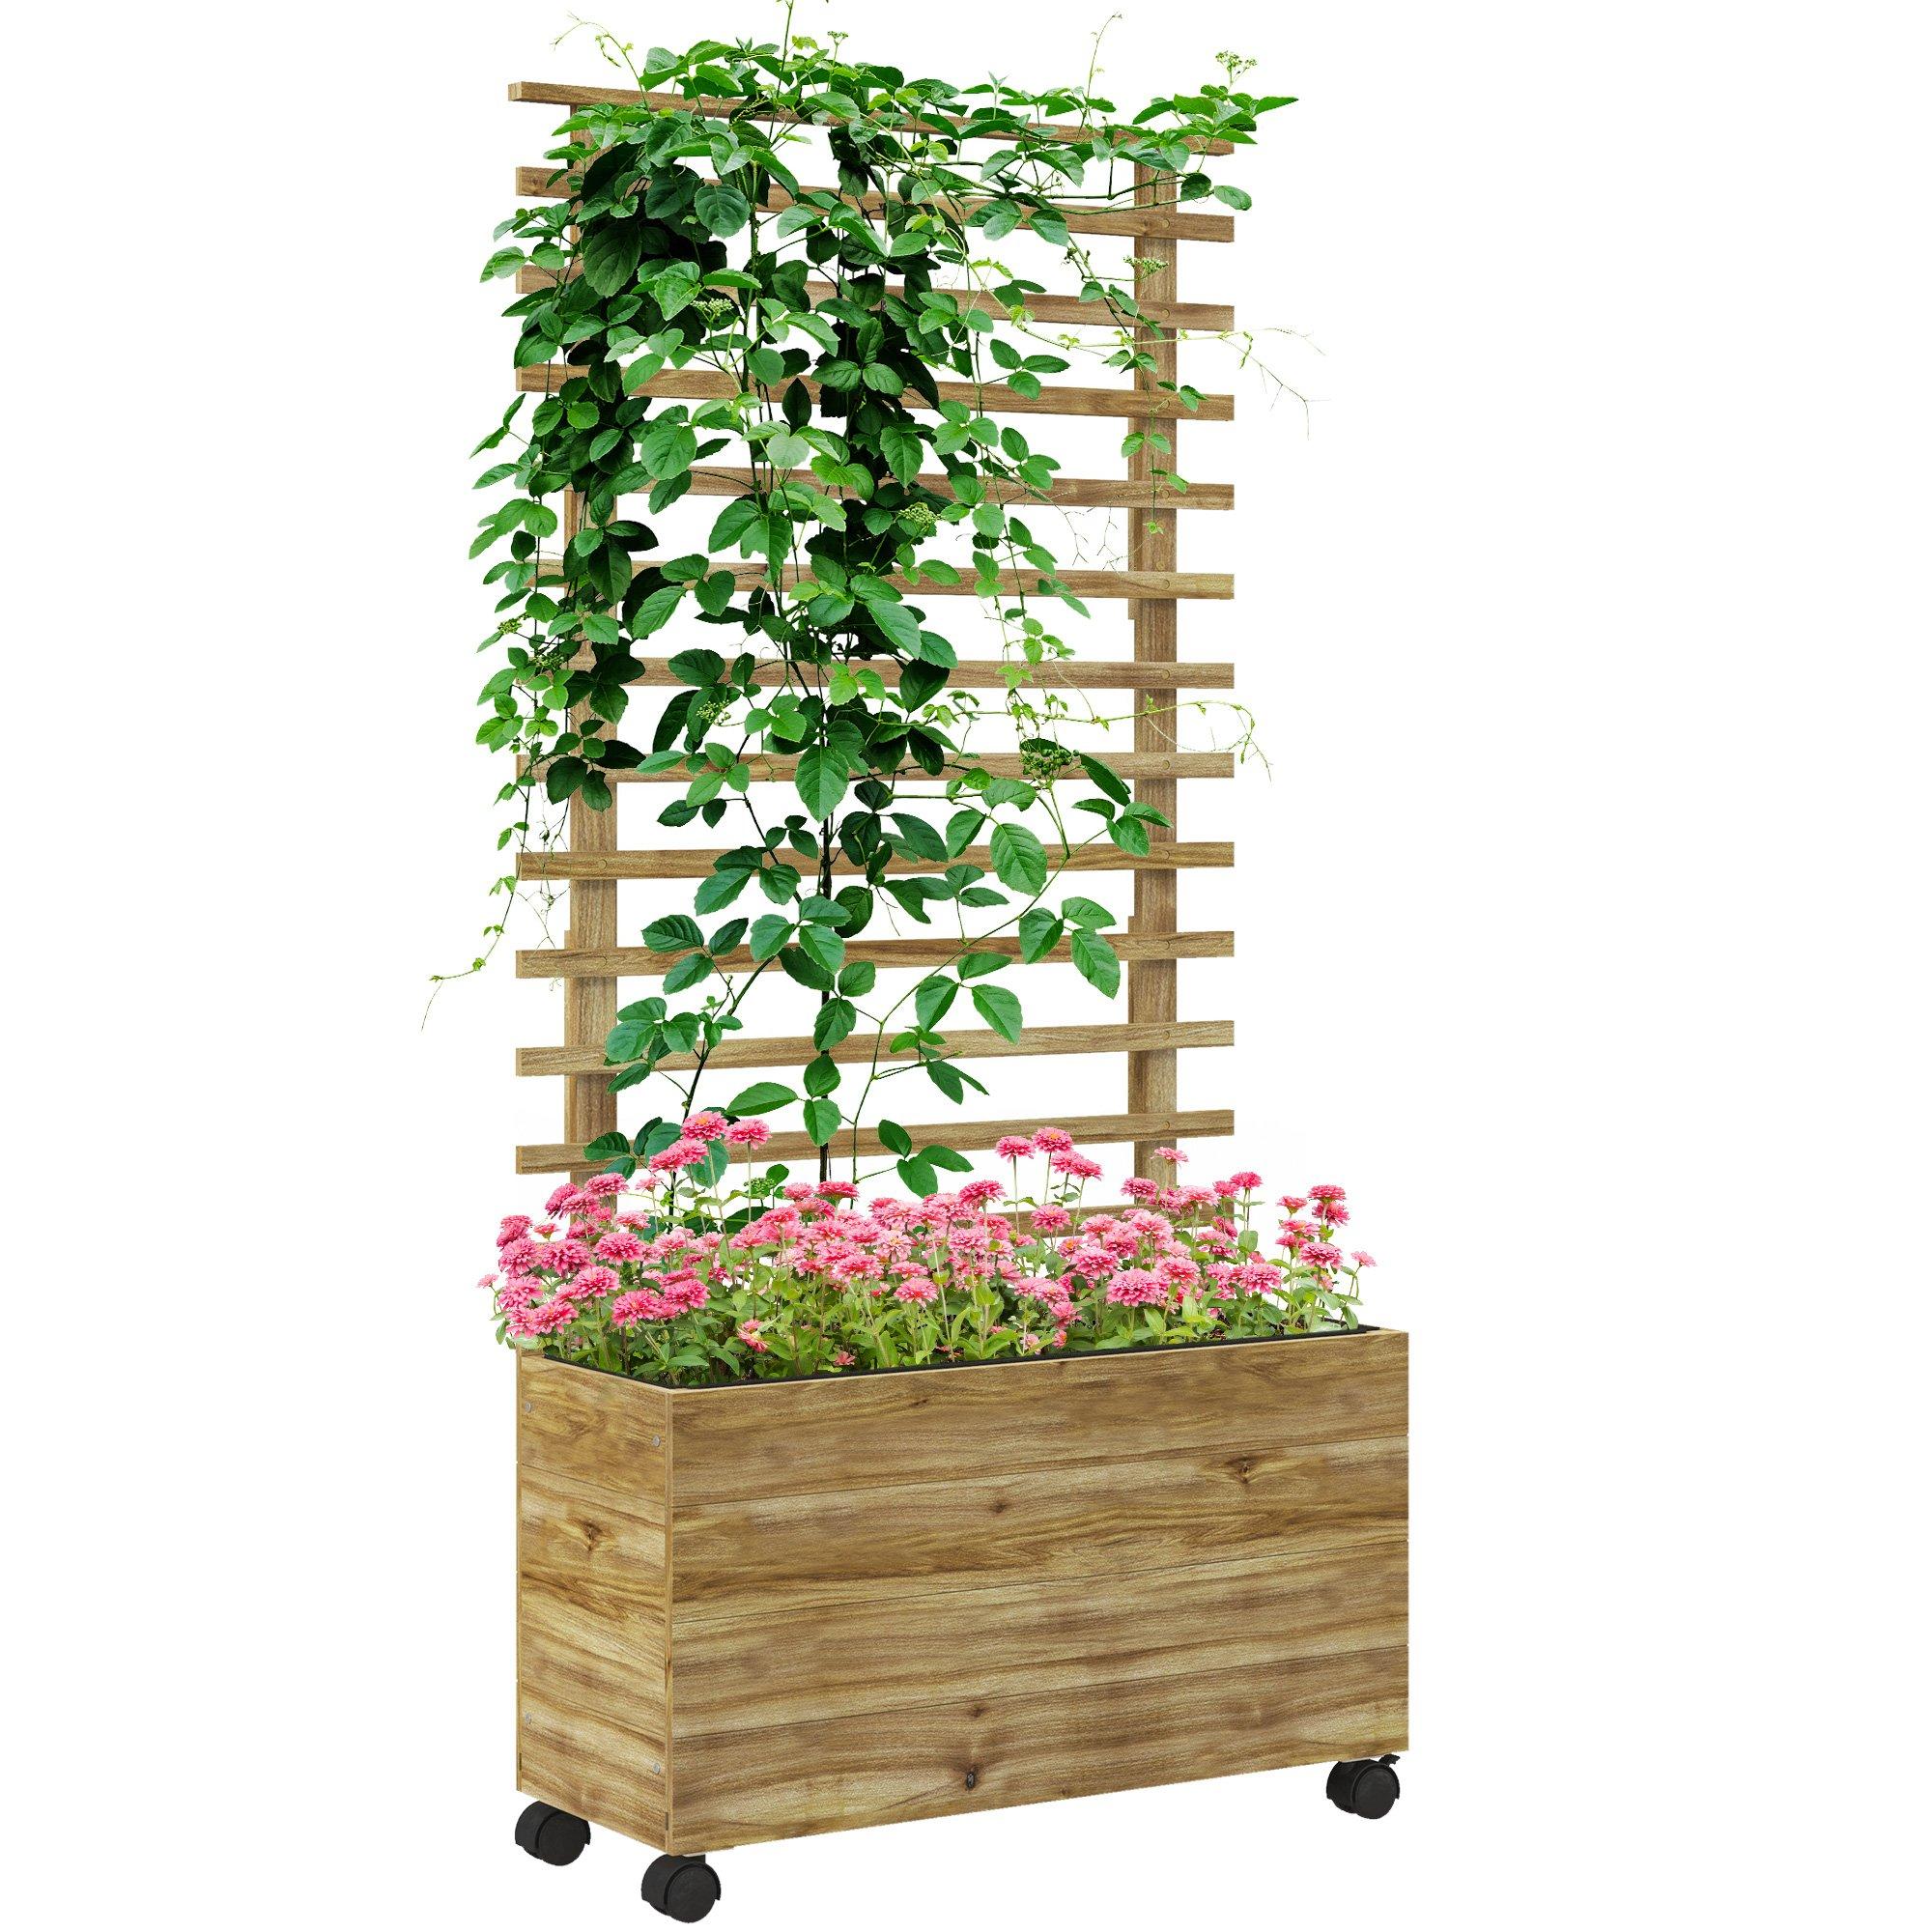 Garden Wooden Trellis Planter Box Raised Bed w/ 4 Wheels